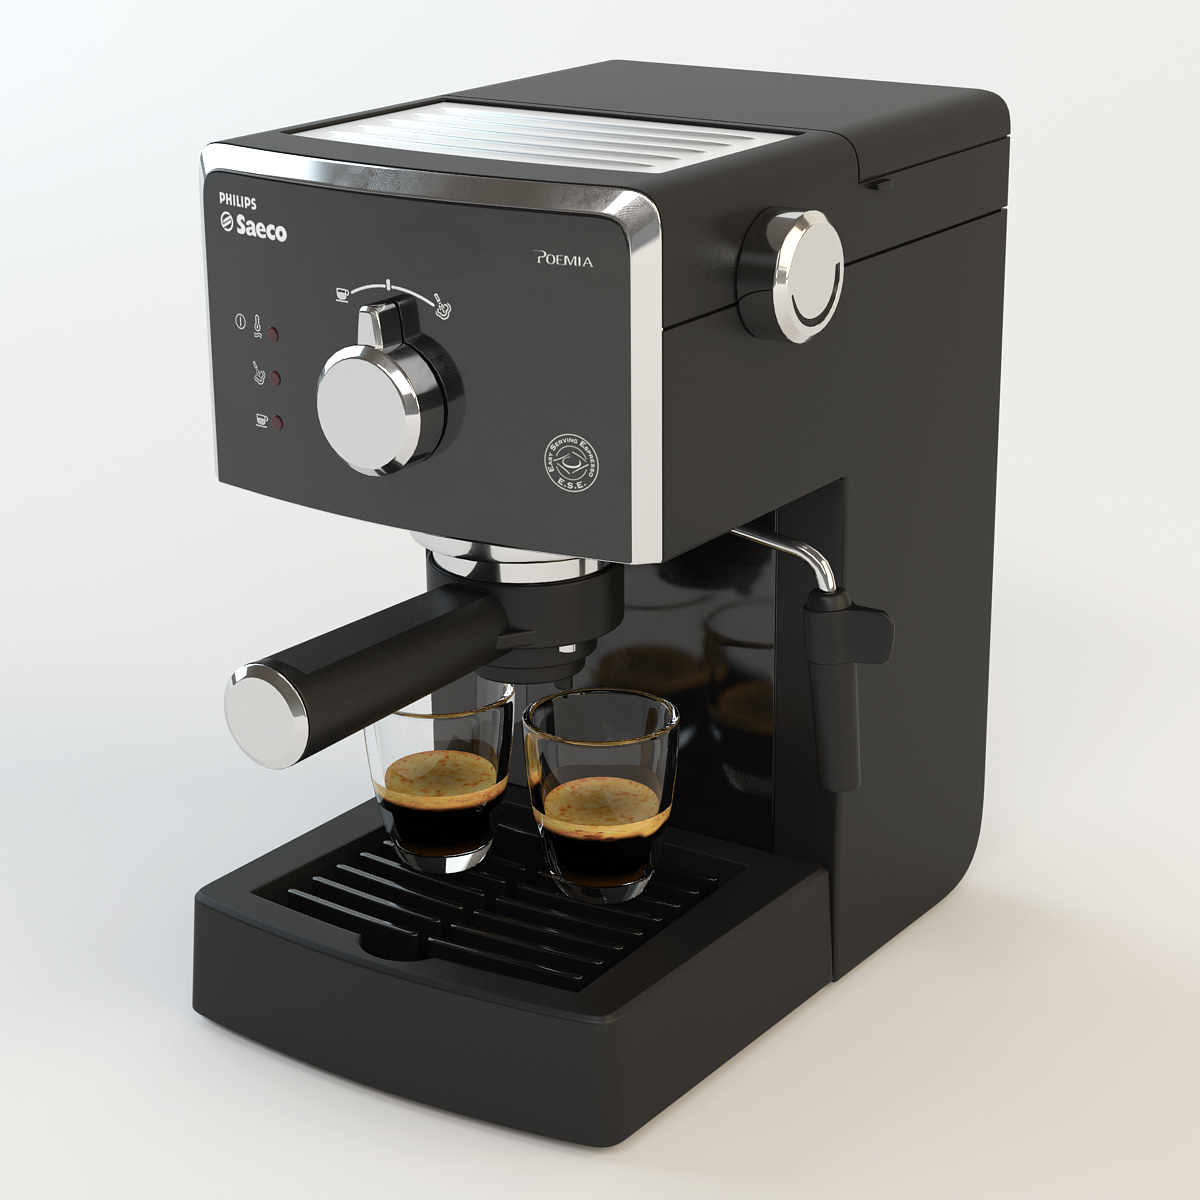 Voorwaarde doel Tips Coffee Maker Philips Saeco Poemia by TimboStudio | 3DOcean